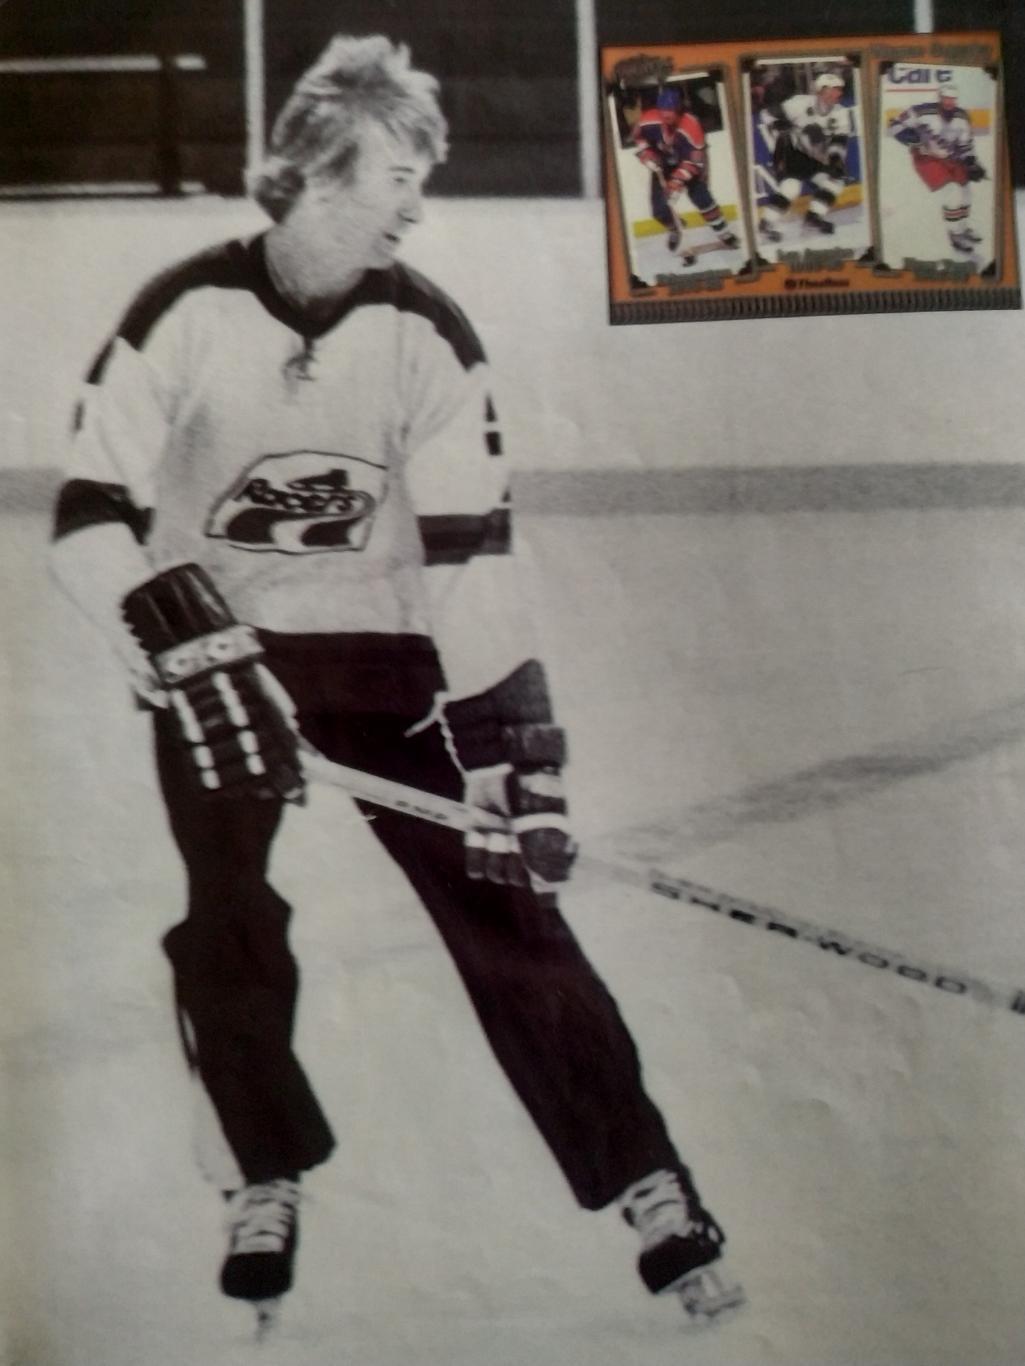 ЖУРНАЛ ЕЖЕМЕСЯЧНИК ХОККИ БЭККЕТ НХЛ NHL 1998 OCT BECKETT HOCKEY MAGAZINE #96 7